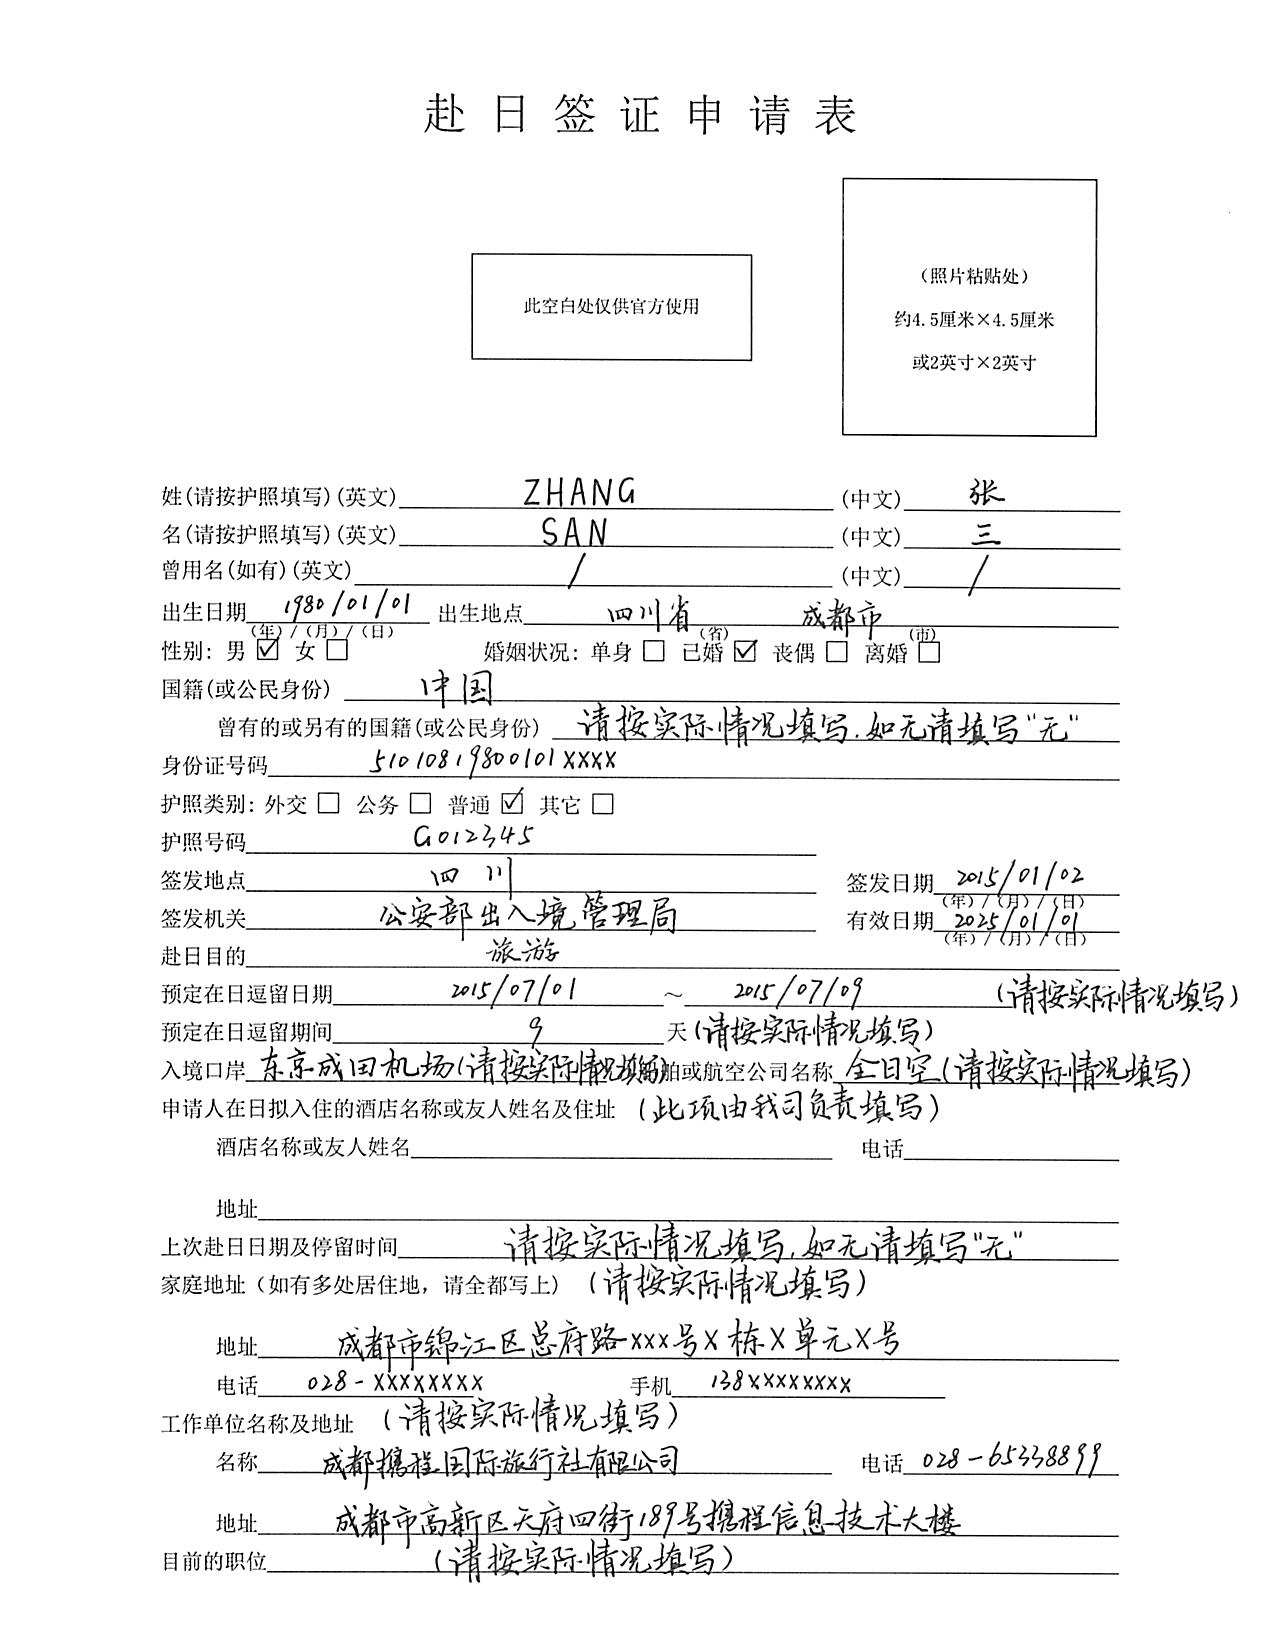 日本签证申请表样本 -携程旅游